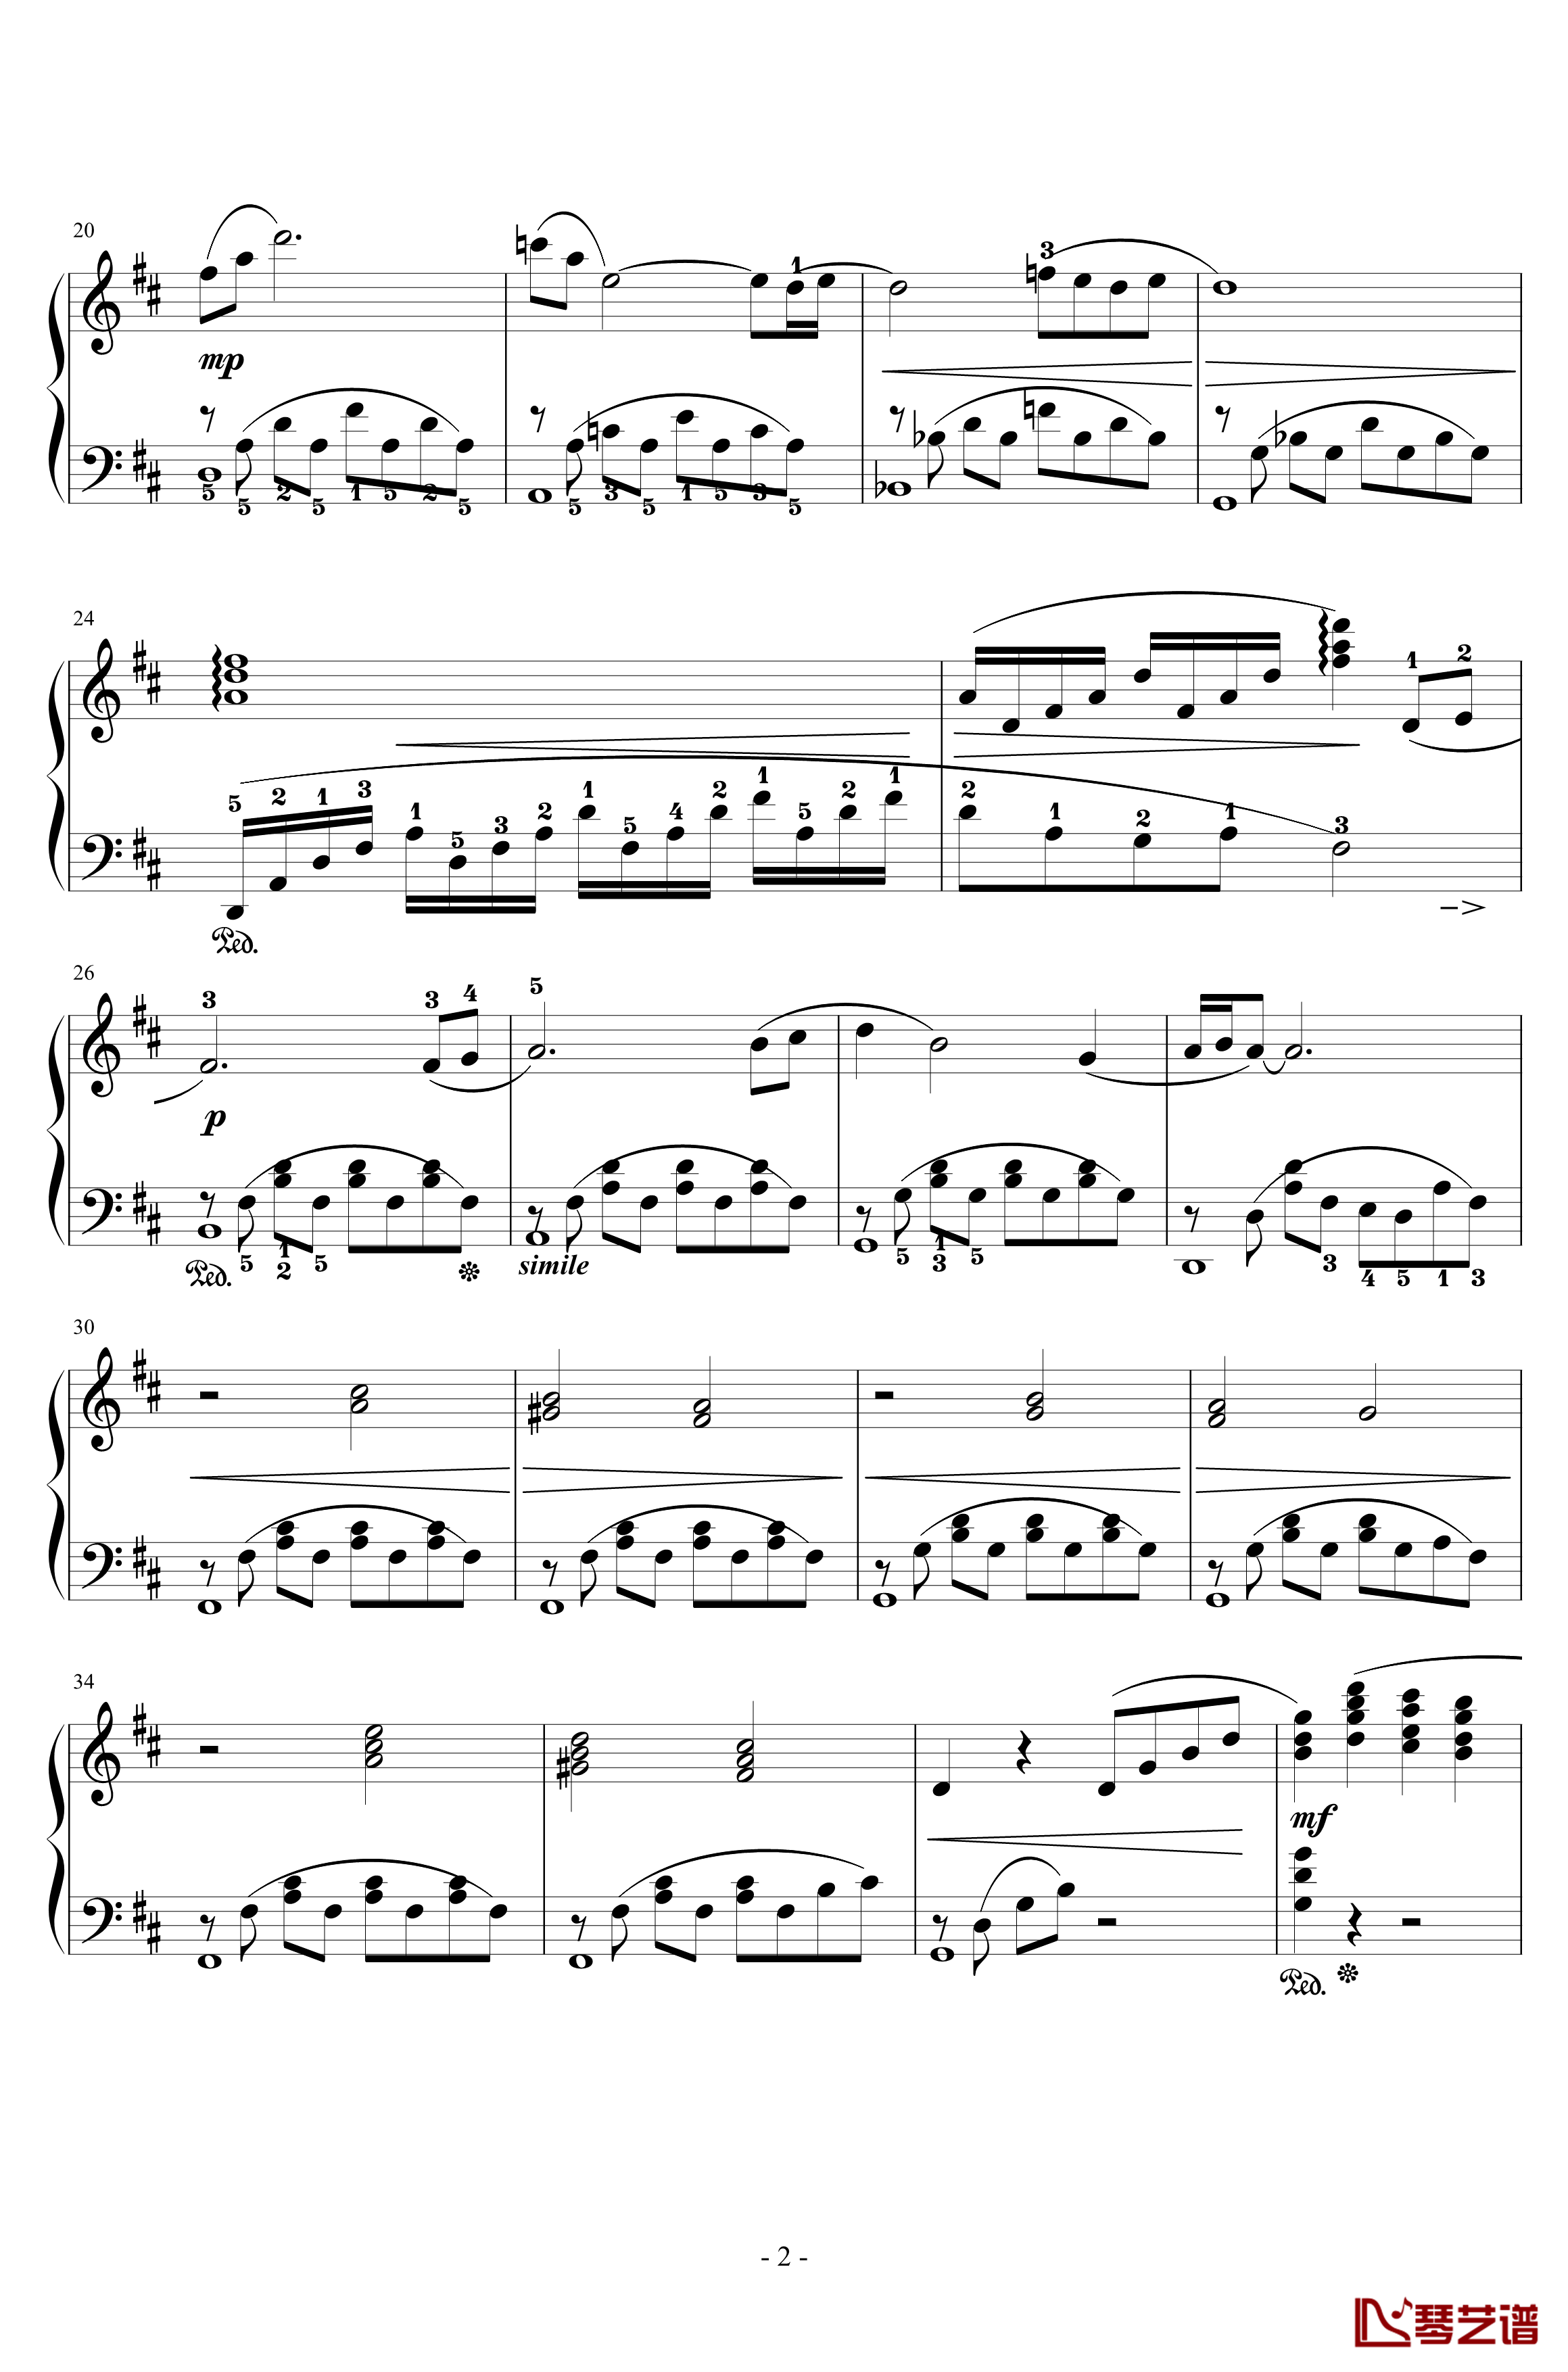 最终幻想7爱丽丝的主题钢琴谱-完整版本-植松伸夫